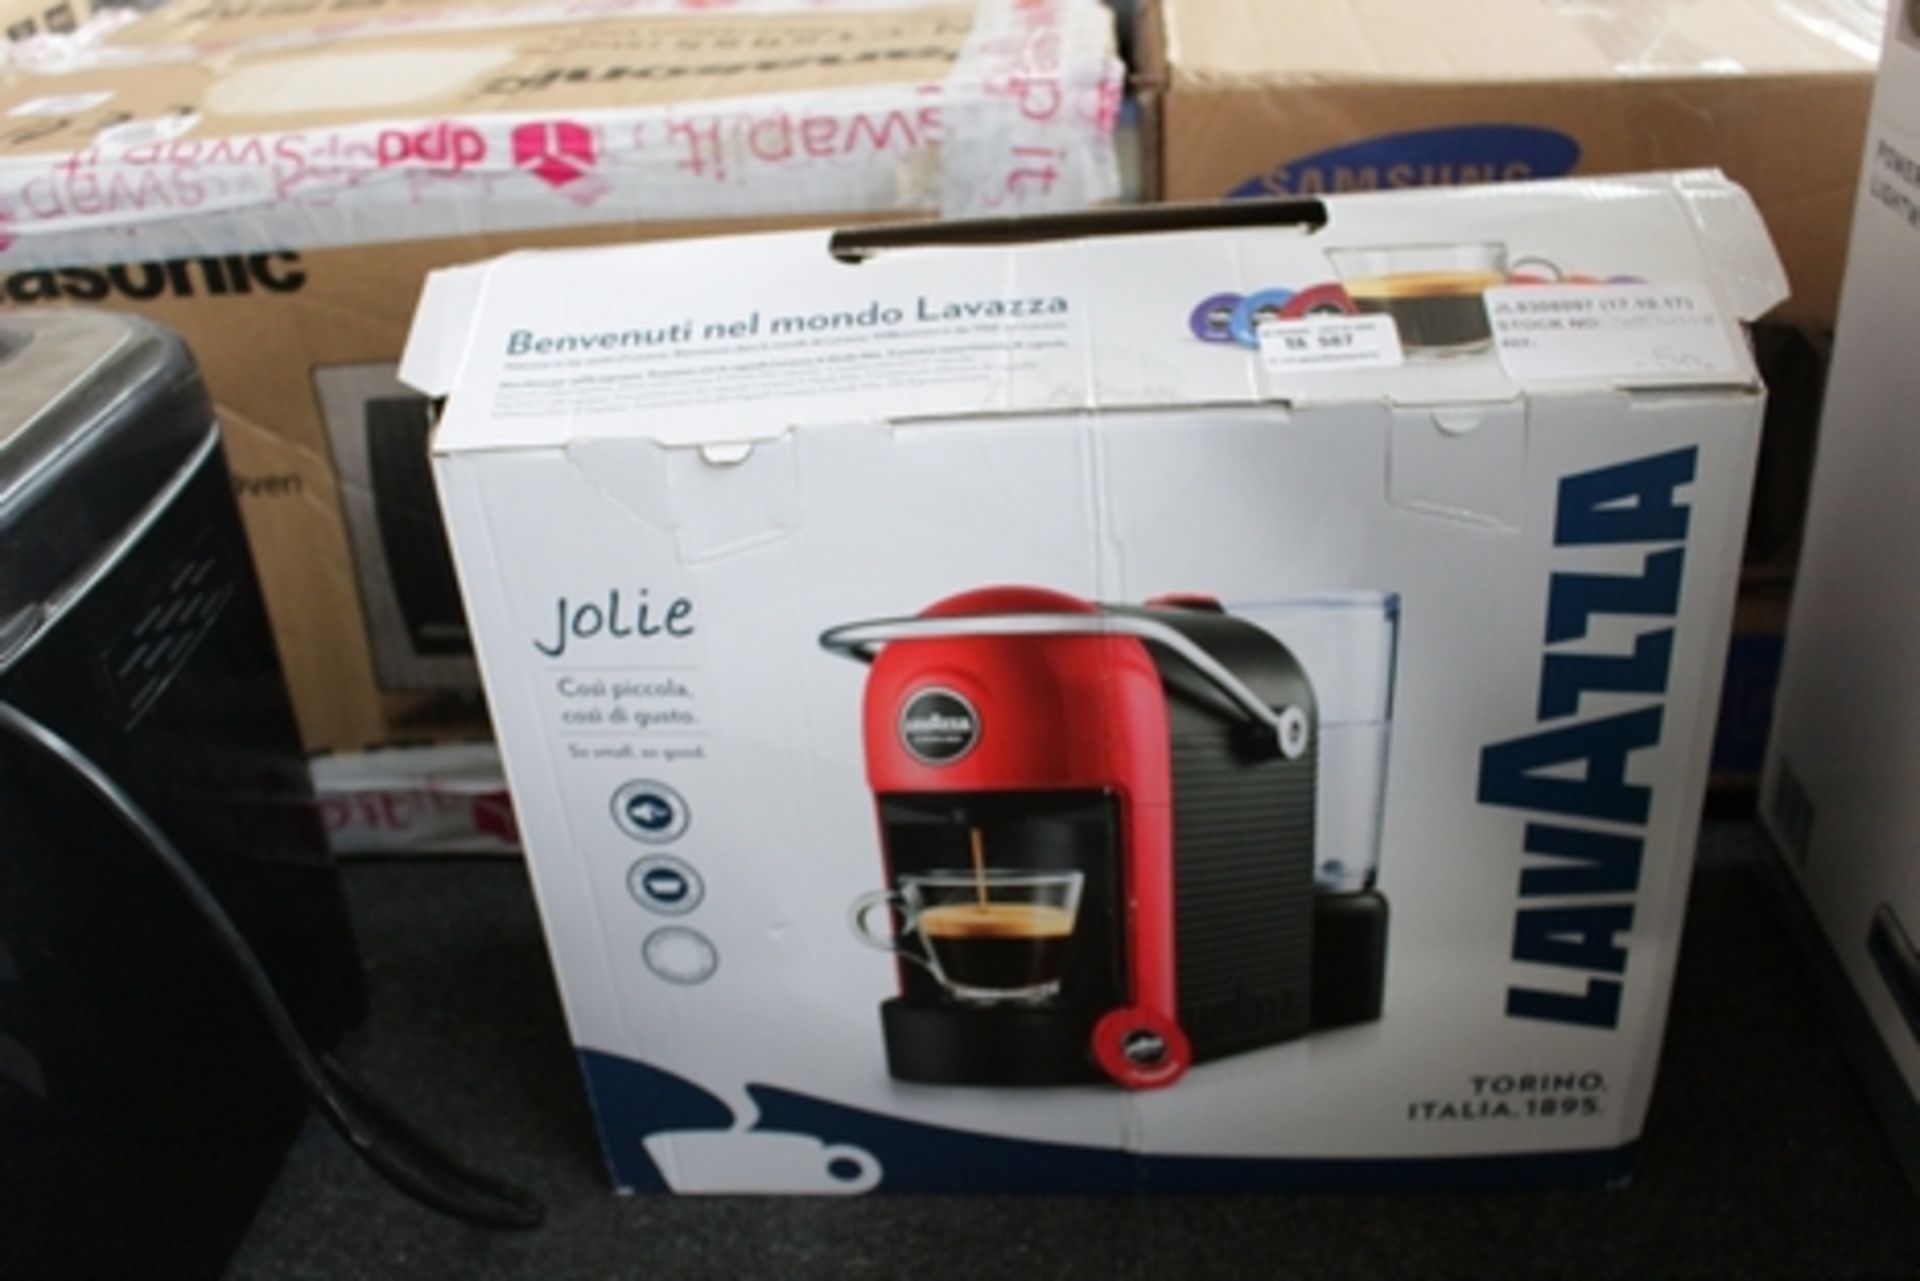 1X BOXED LAVAZZA AMODO MIO JOLIE ESPRESSO COFFEE MACHINE RRP £50 (JL-9308097) (17/10/17) (3801018)